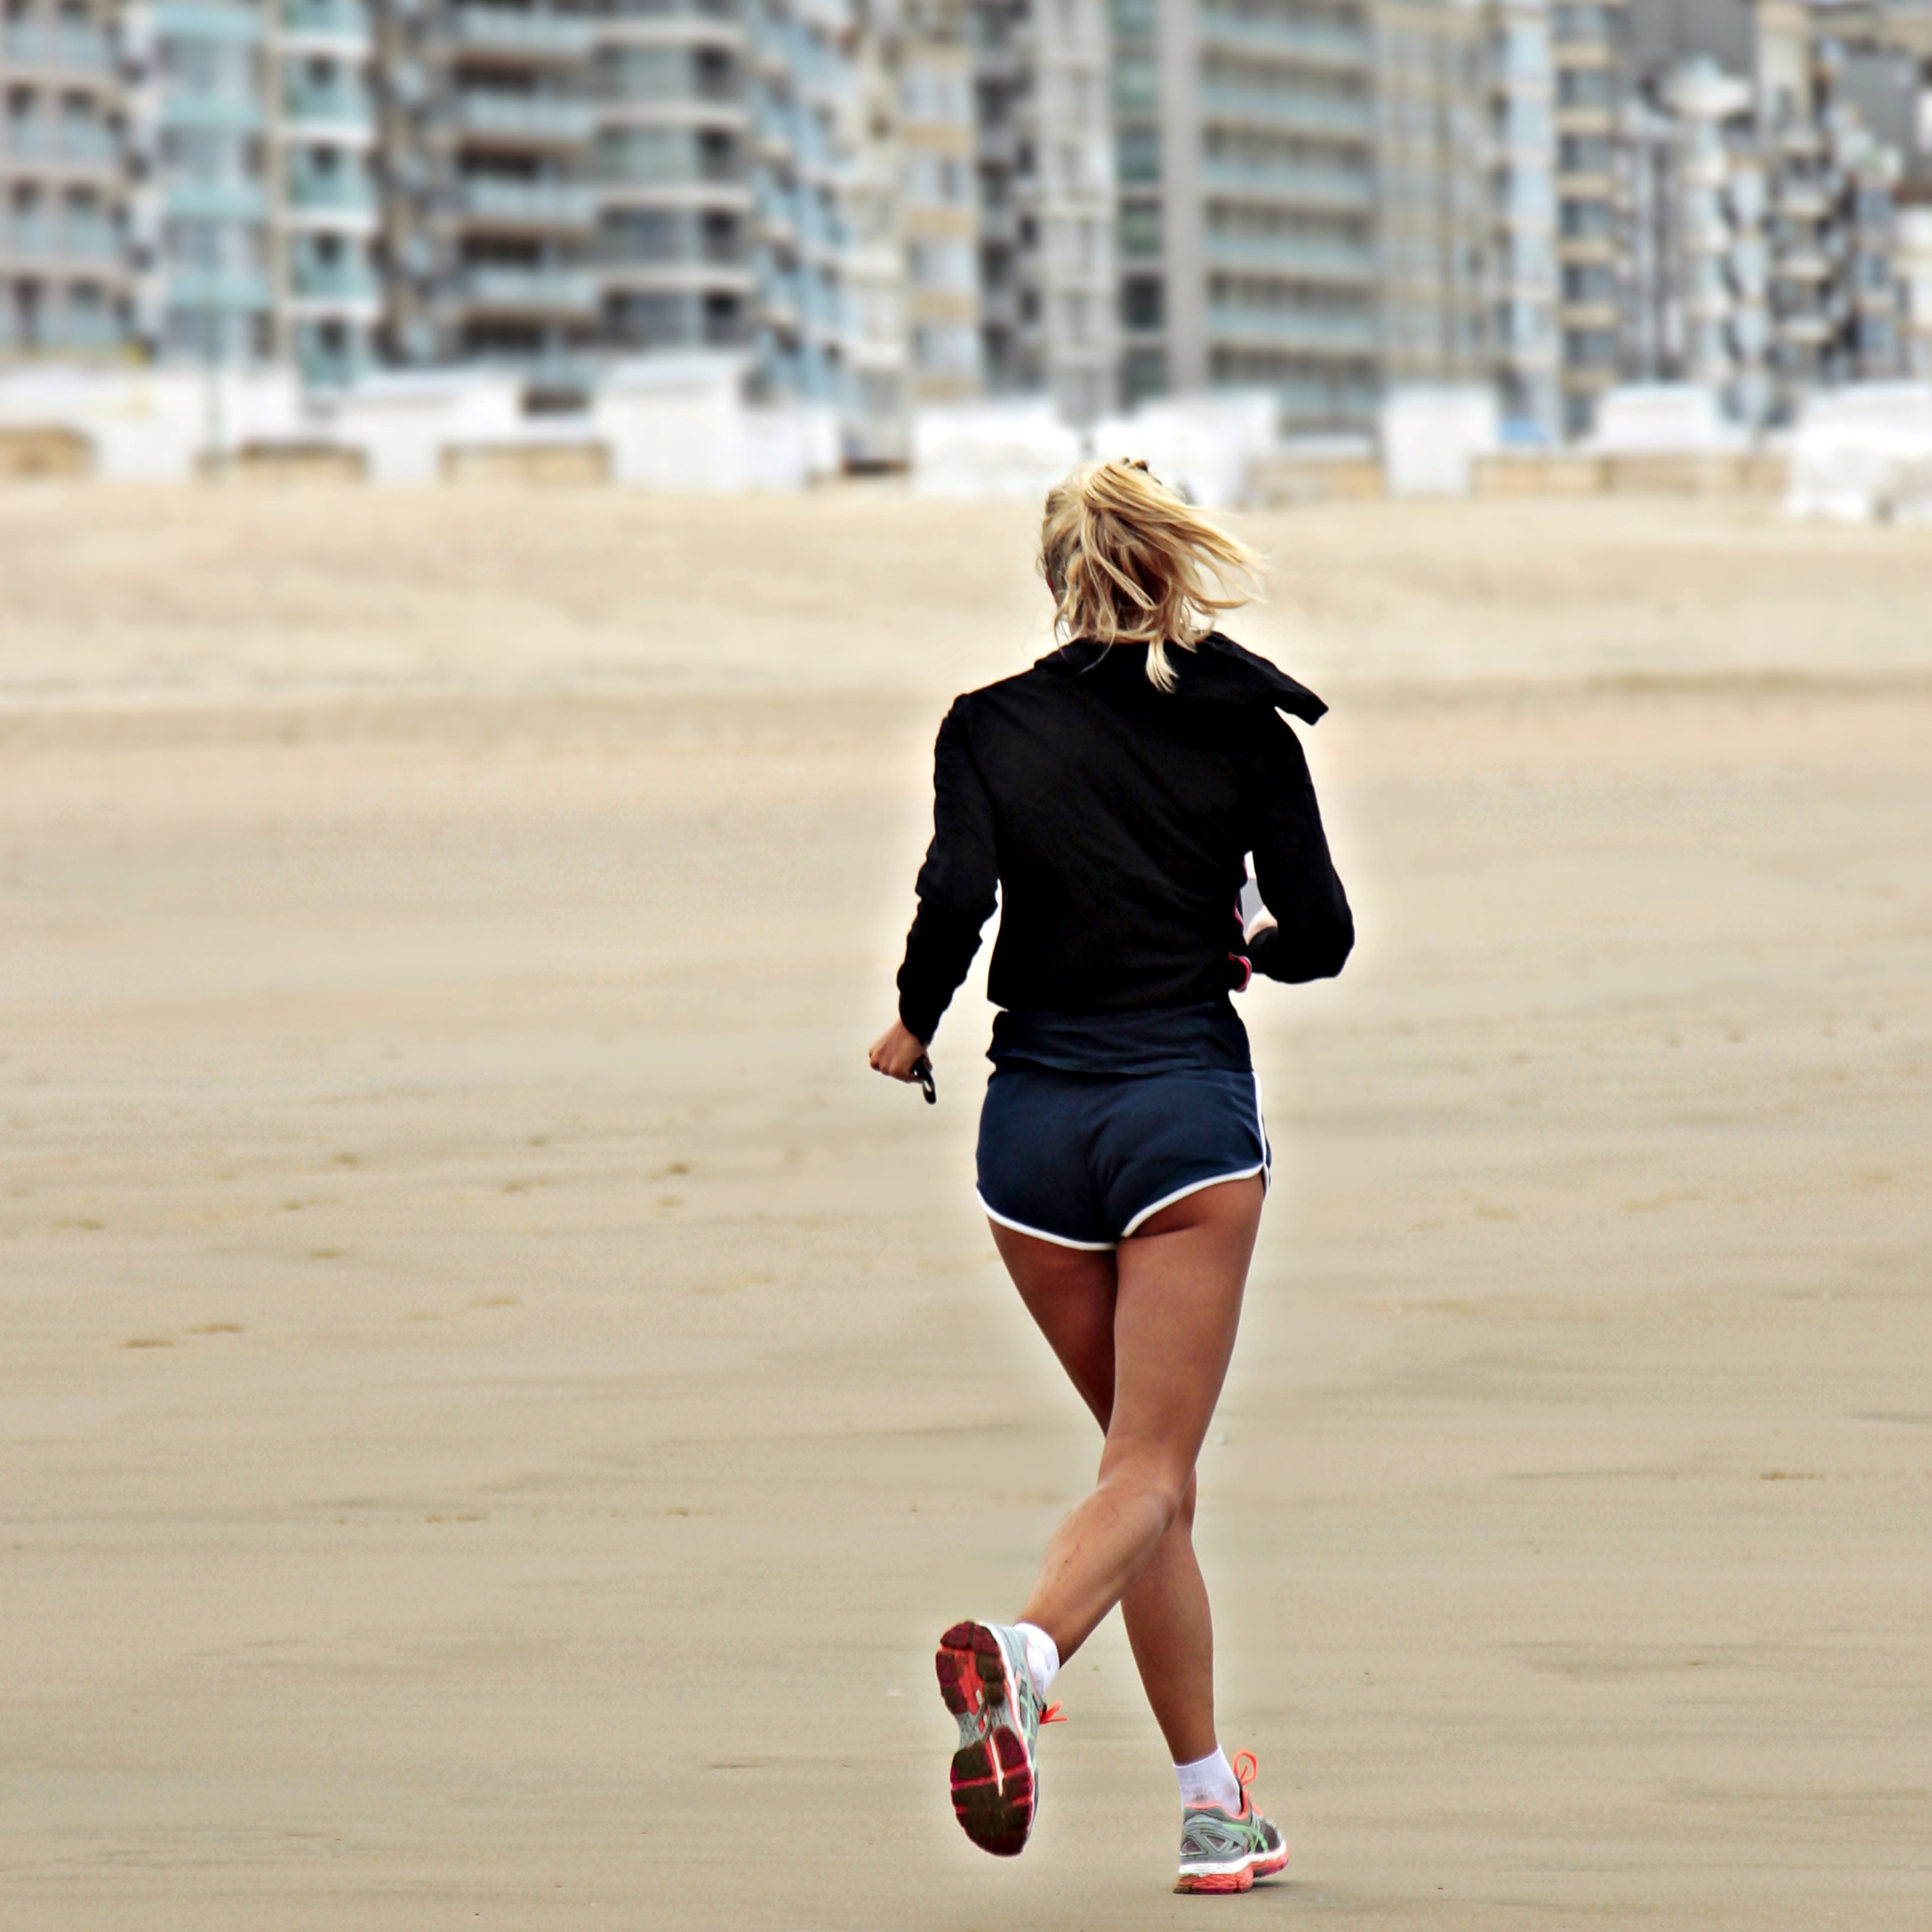 Correr reduce el riesgo de muerte significativamente, según la ciencia